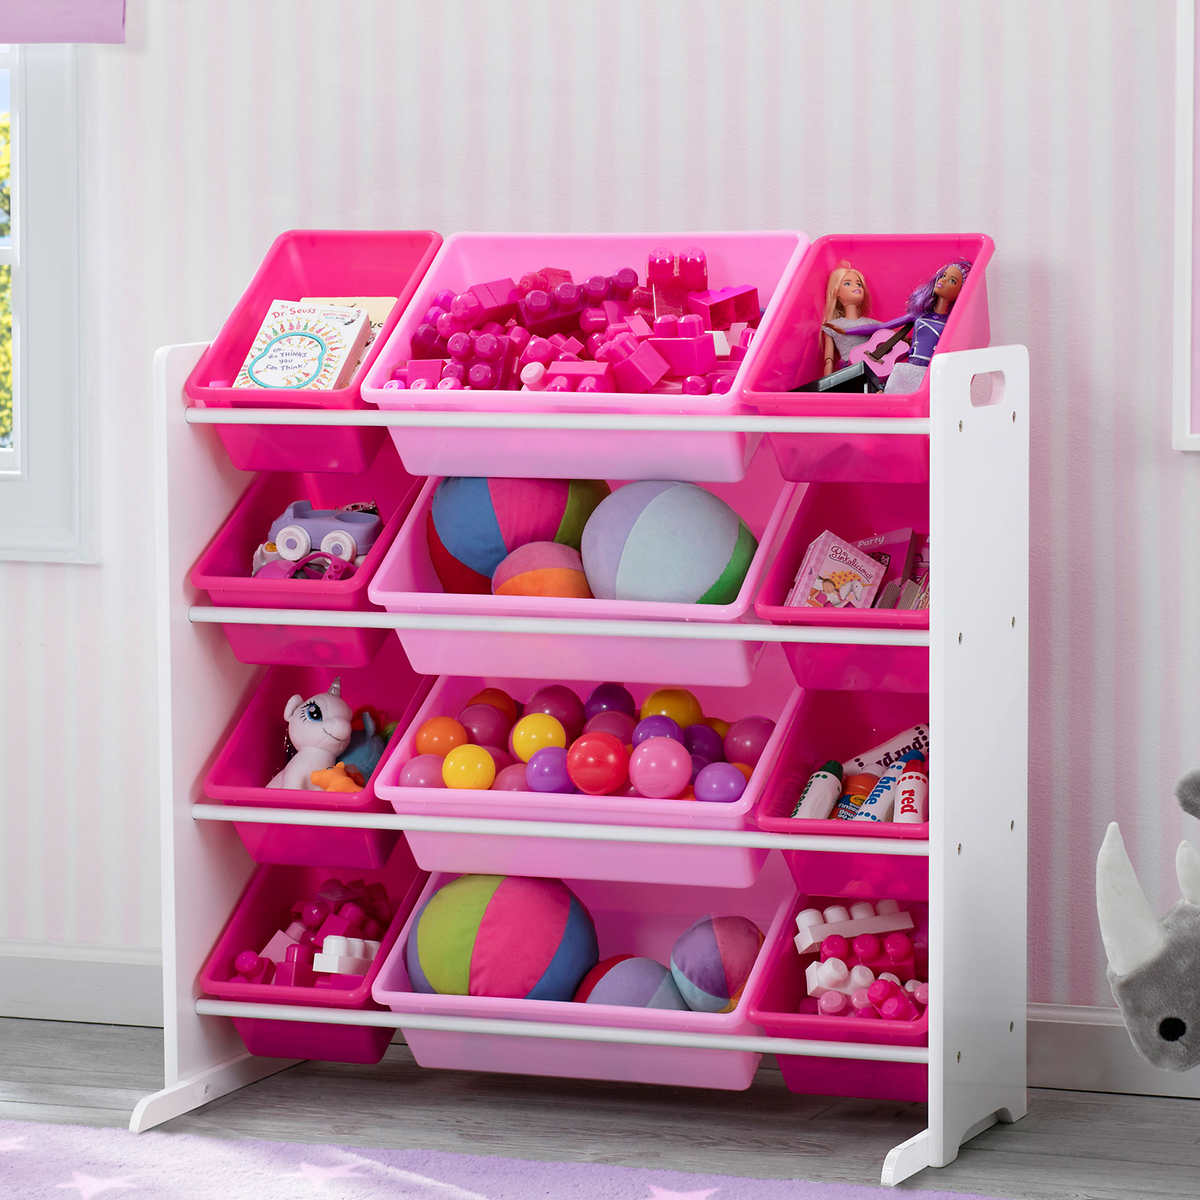 Kids 12 Bin Toy Storage Organizer Pink, Muscle Rack Book Toy Storage Organizer With 6 Plastic Bins